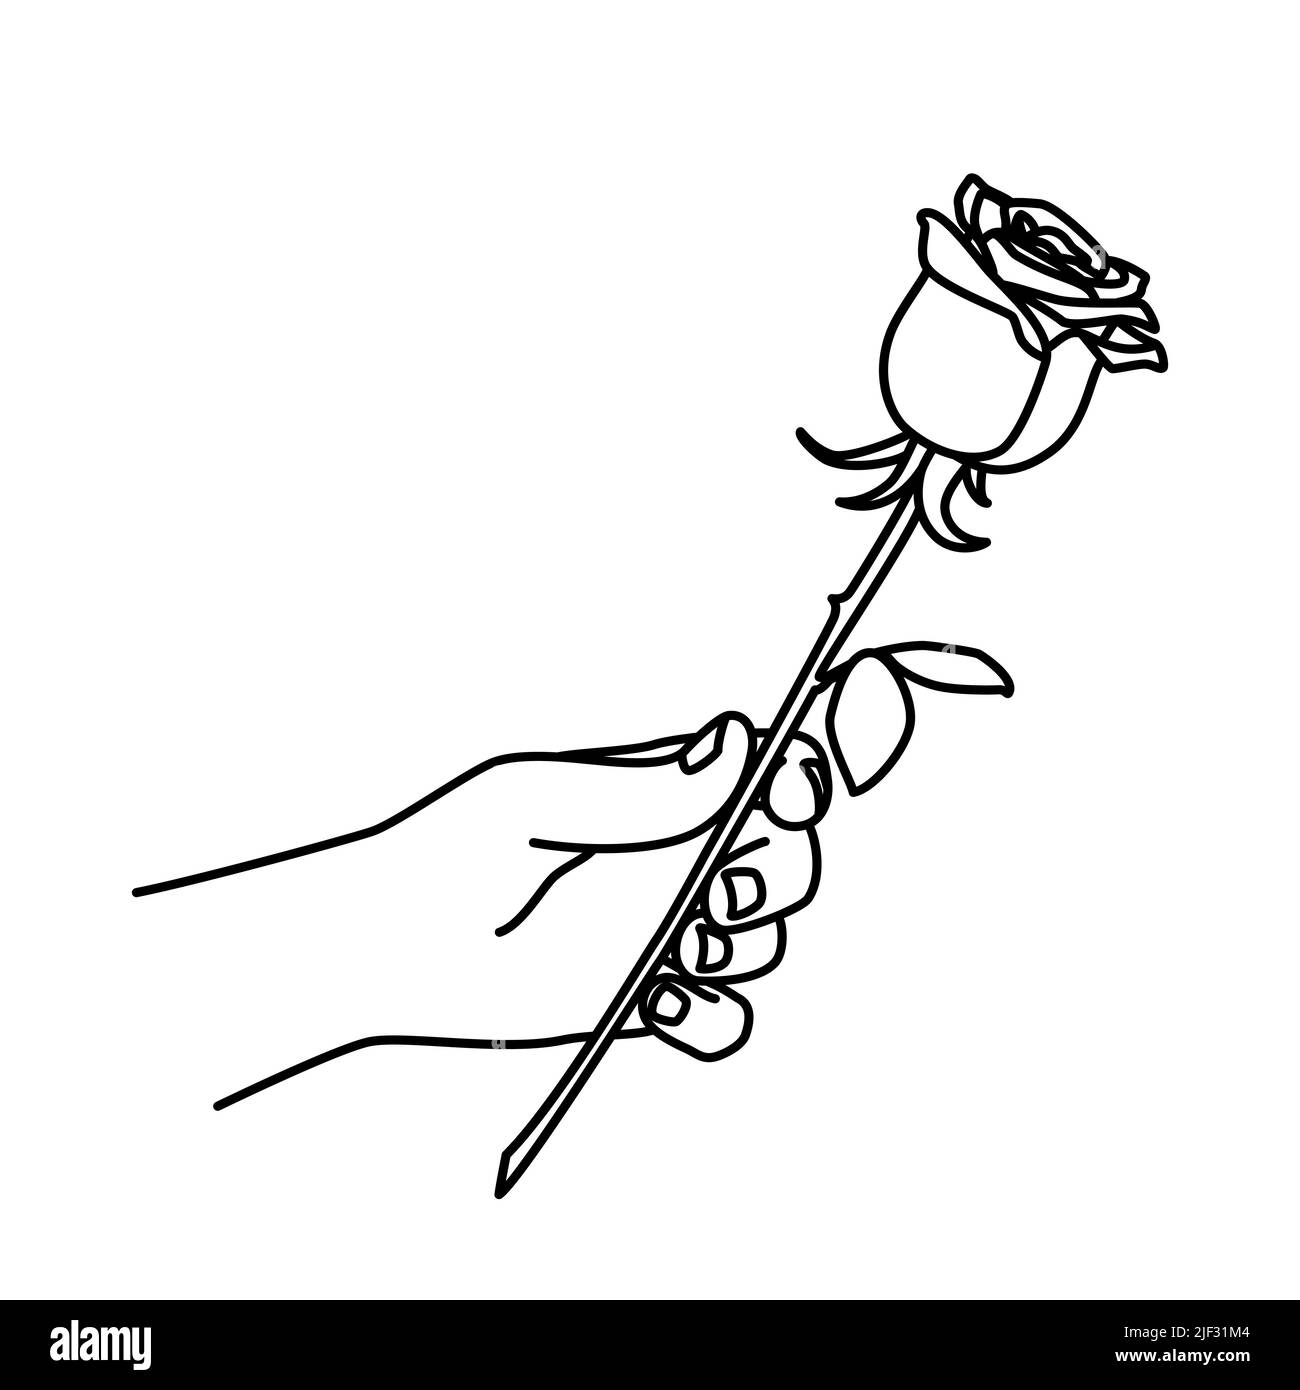 Main tenant une rose et lui donnant. L'homme donne une fleur. Tracé à la main avec une ligne fine. Illustration vectorielle isolée sur fond blanc Illustration de Vecteur